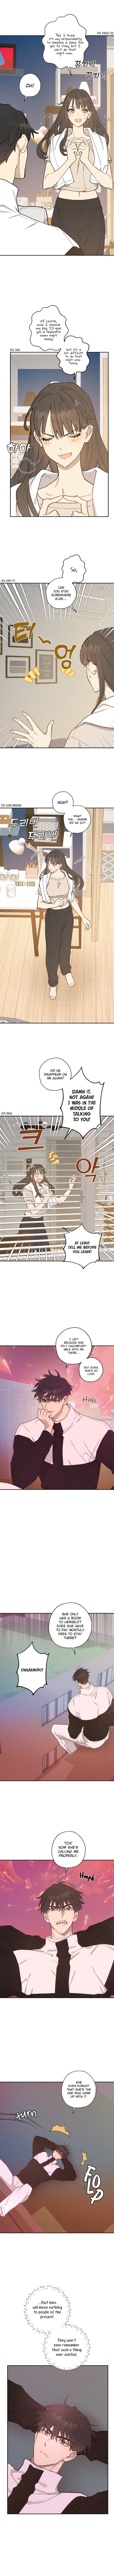 Onsaemiro - Chapter 13 Page 4